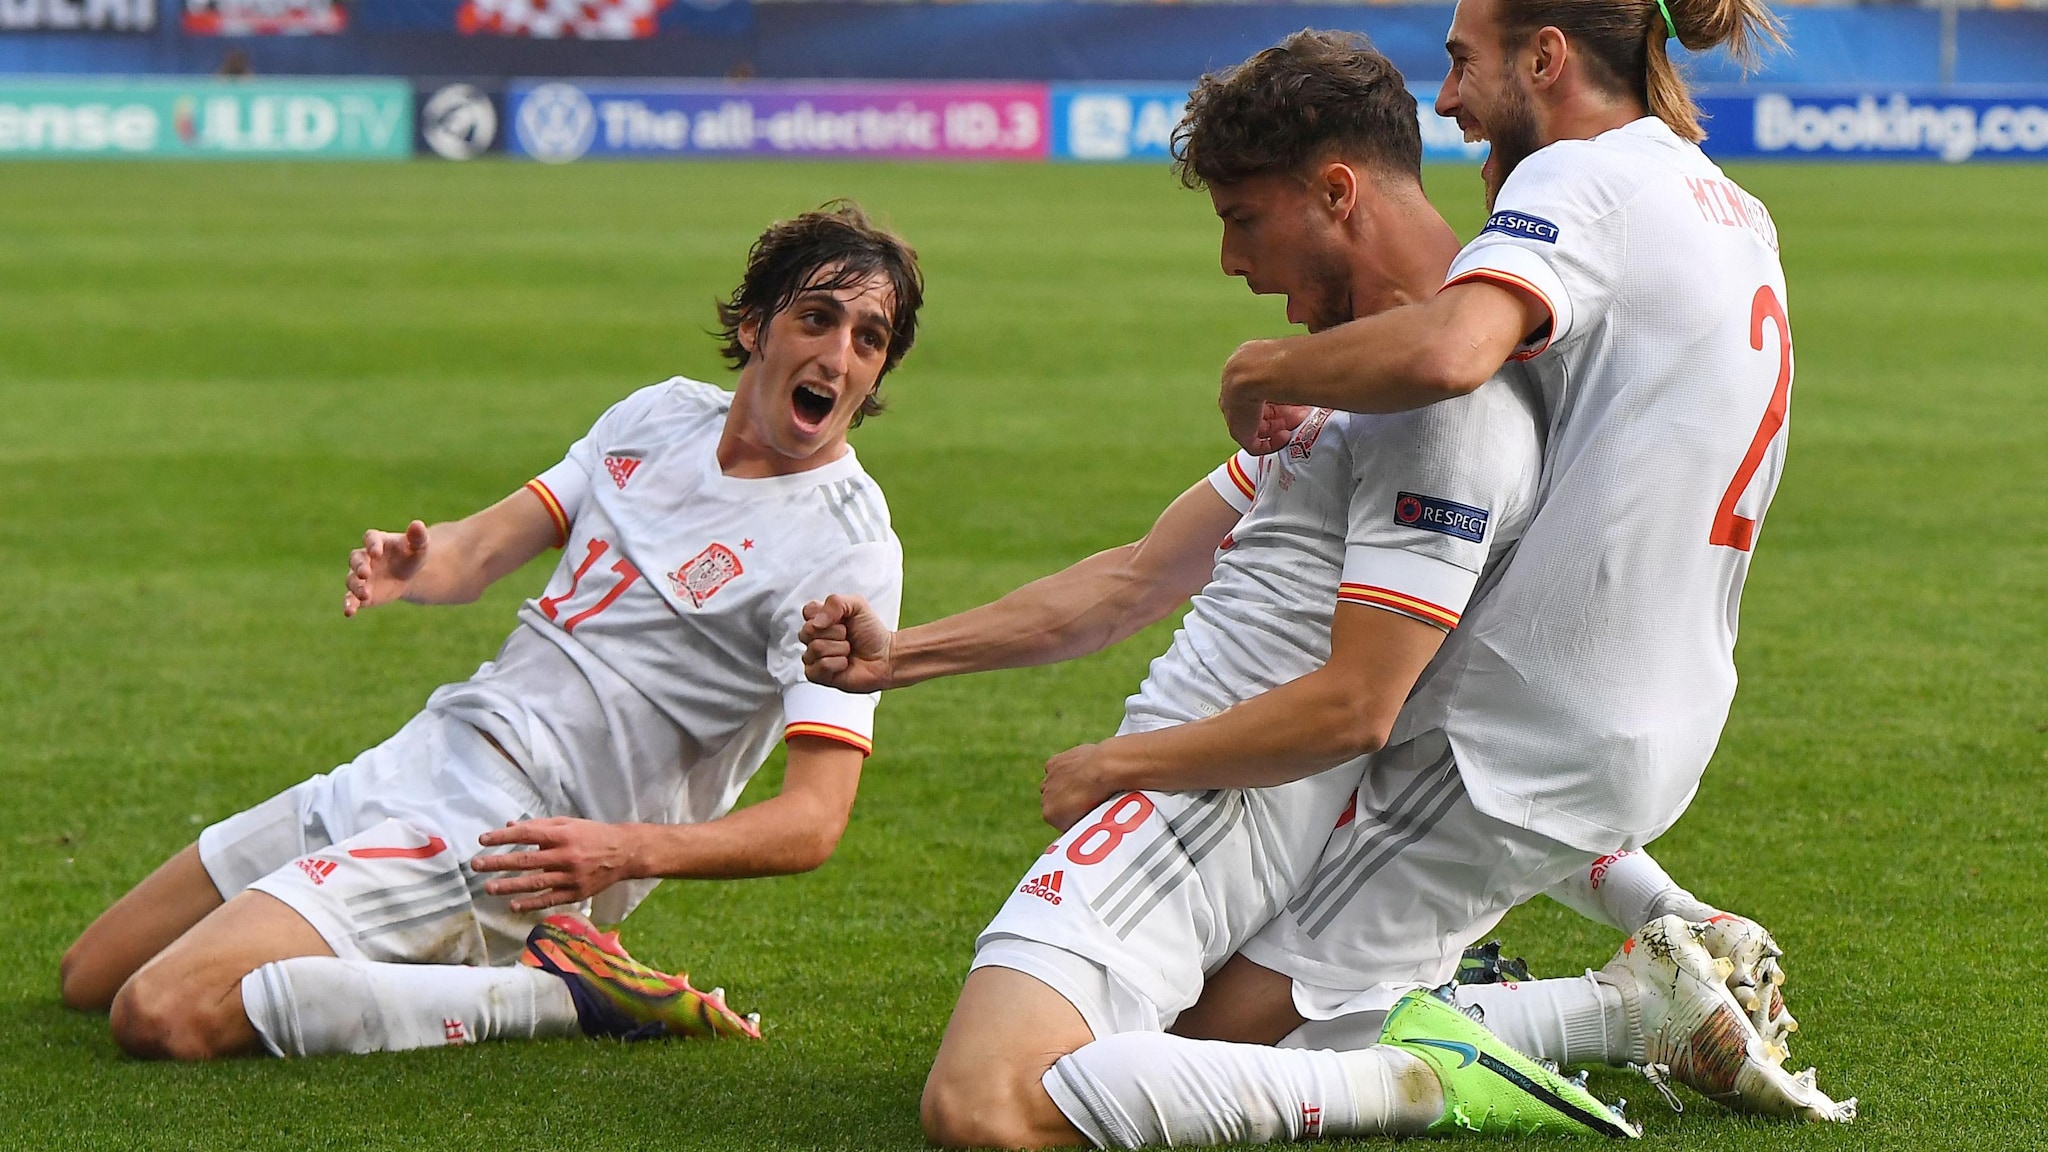 Niederlande, Spanien, Portugal und Deutschland erreichen das Halbfinale  Unter 21 Jahren